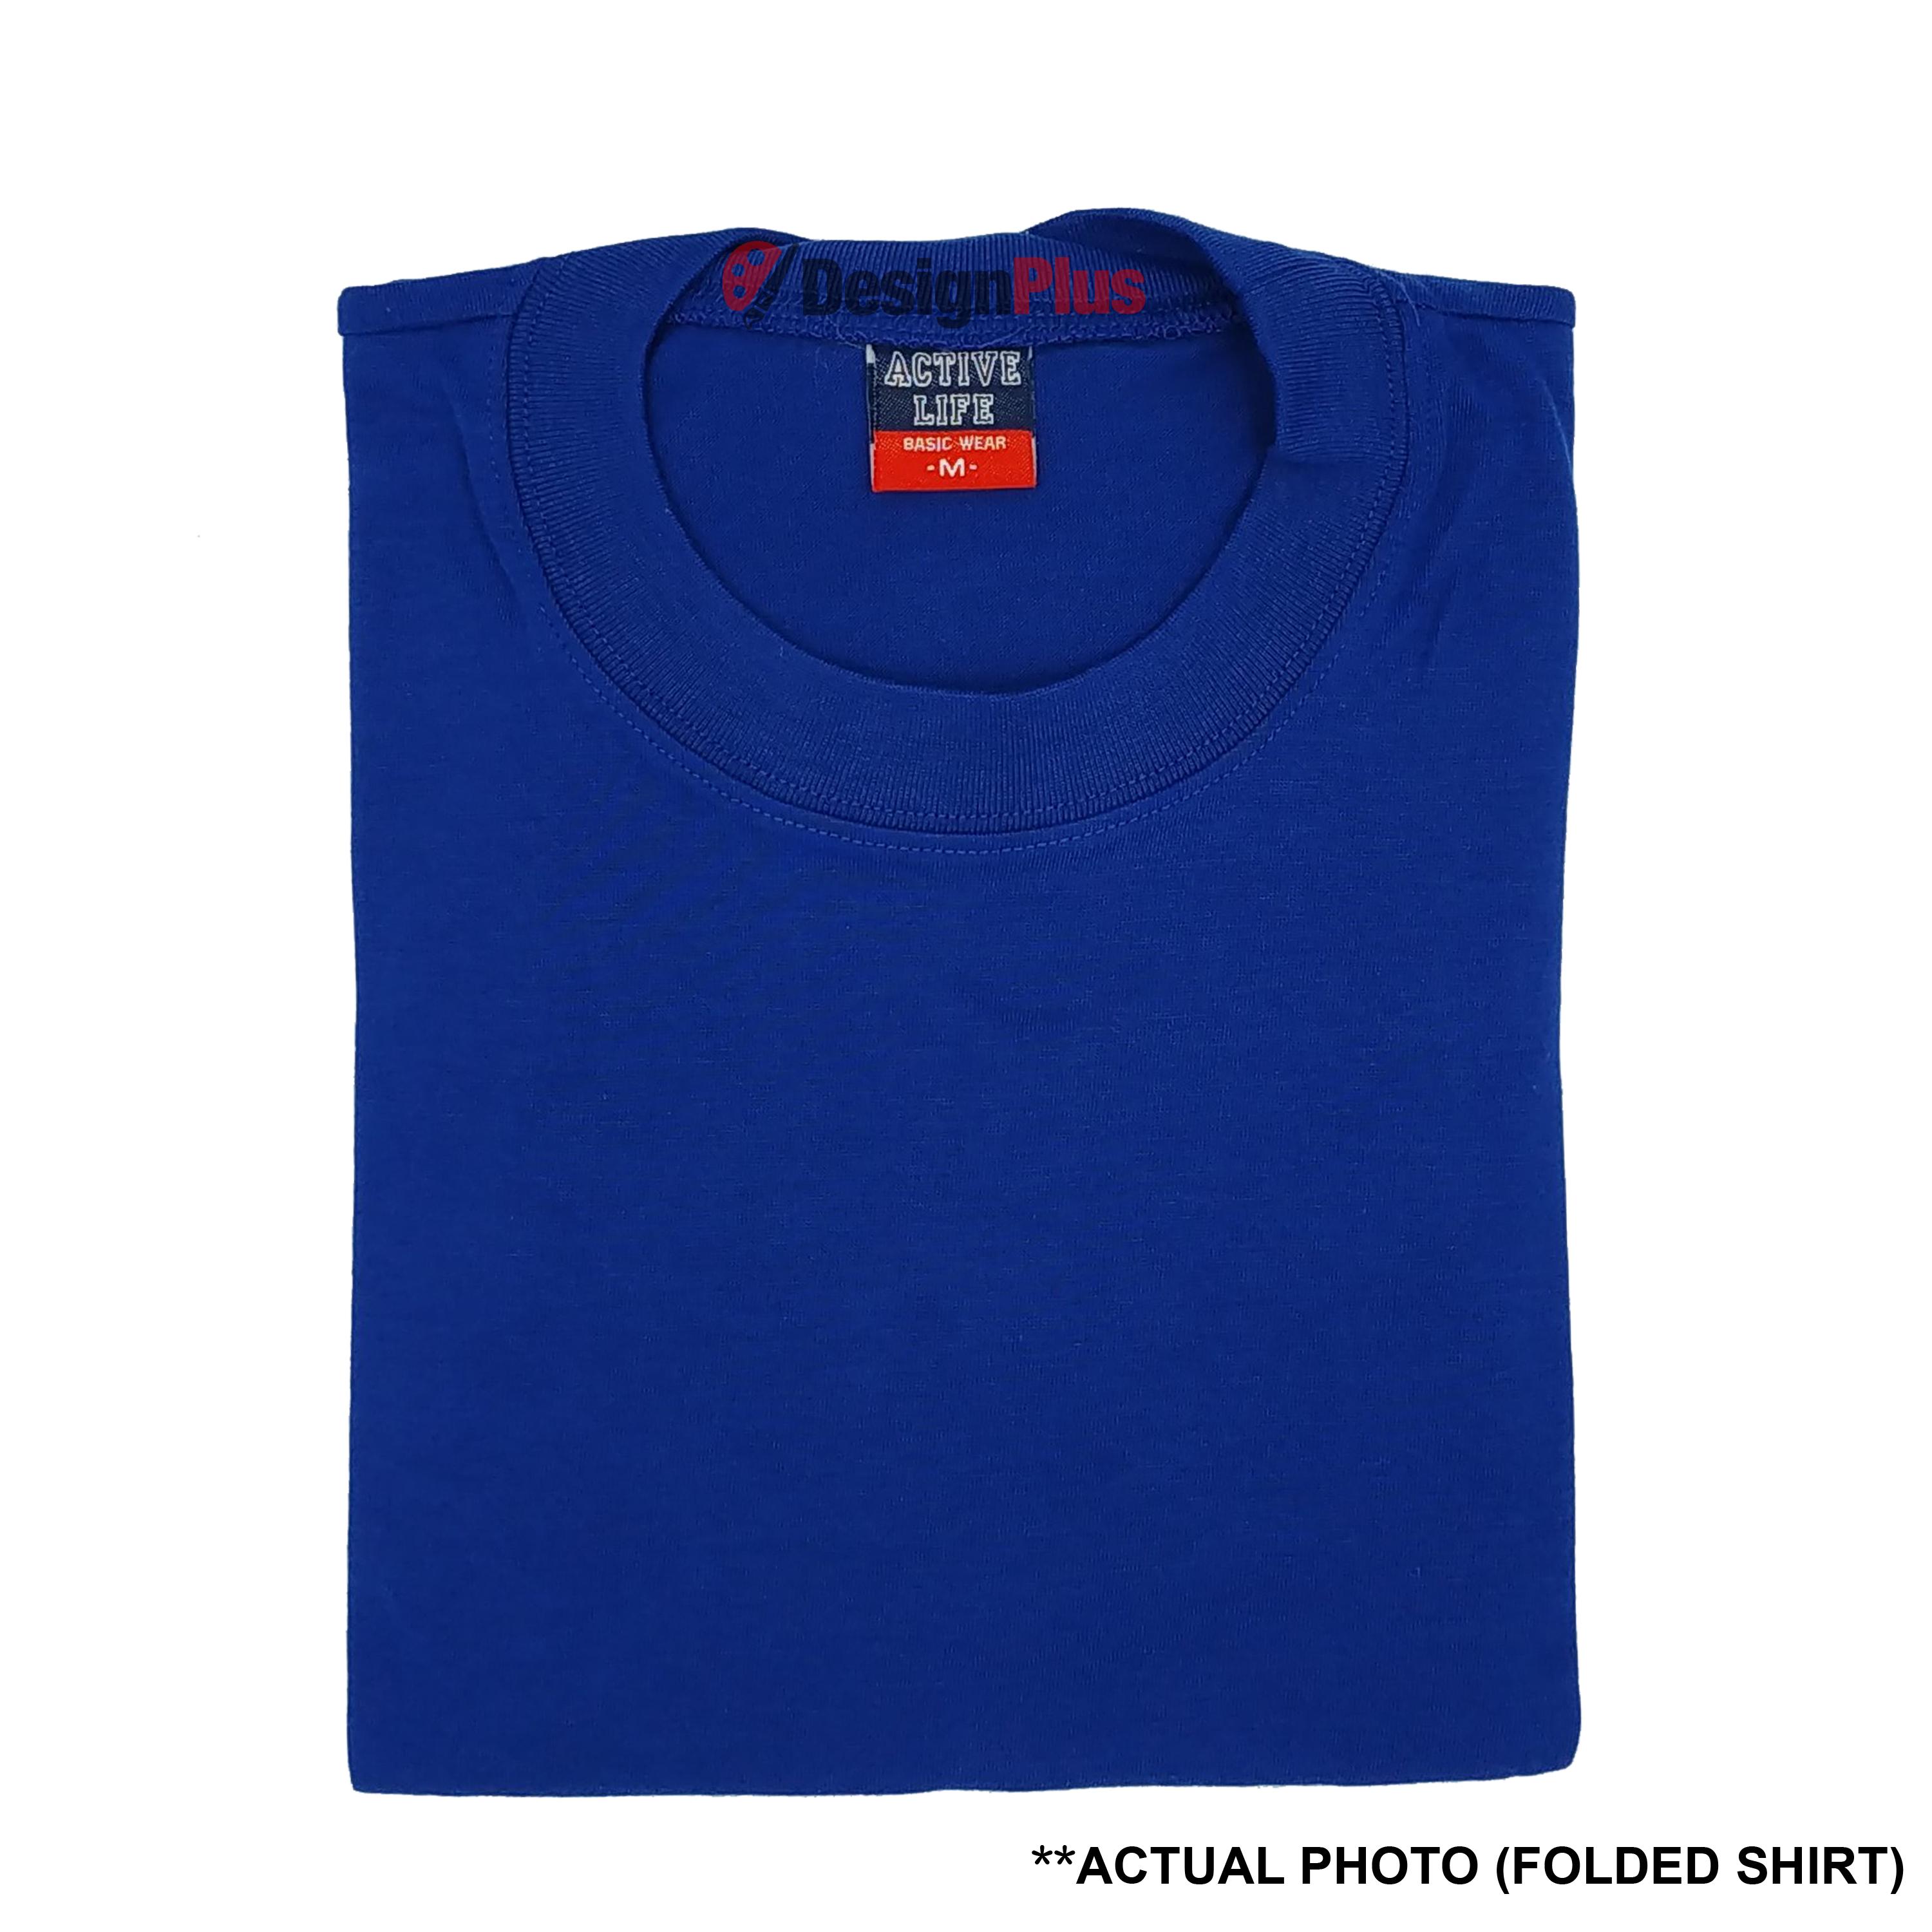 DesignPlus Active Life Plain Roundneck Basic Unisex T-Shirt 100% Combed Cotton (Royal Blue) - shirt tshirt plain tee tees Mens shirt shirts for men tshirts t-shirts sale plain top bestseller Royal